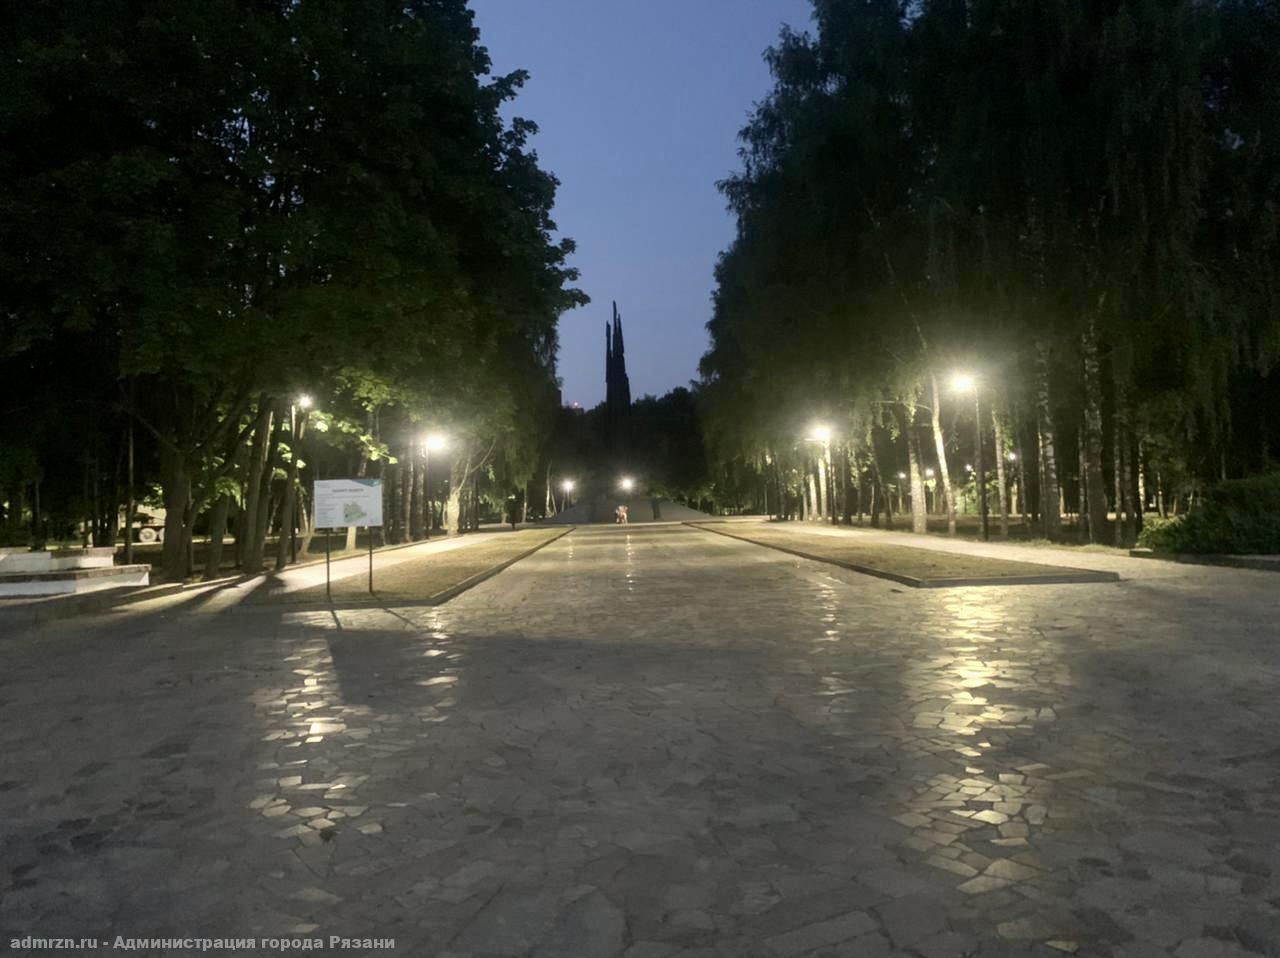 В Рязани готовятся включить уличное освещение в сквере Братства по оружию